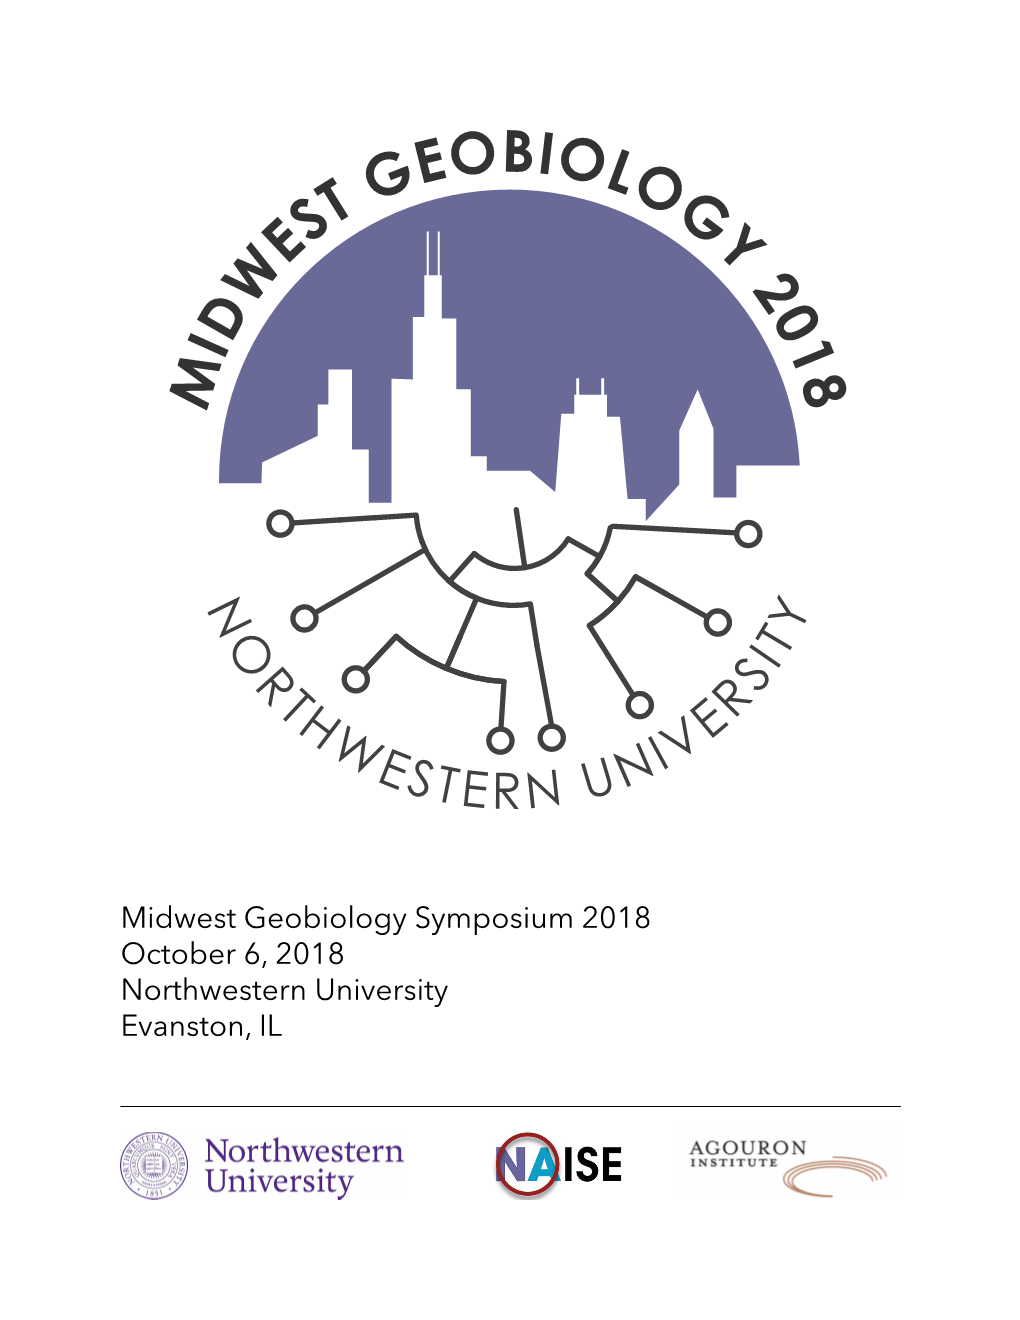 Northwestern University Evanston, IL Welcome to Northwestern University and the Seventh Annual Midwest Geobiology